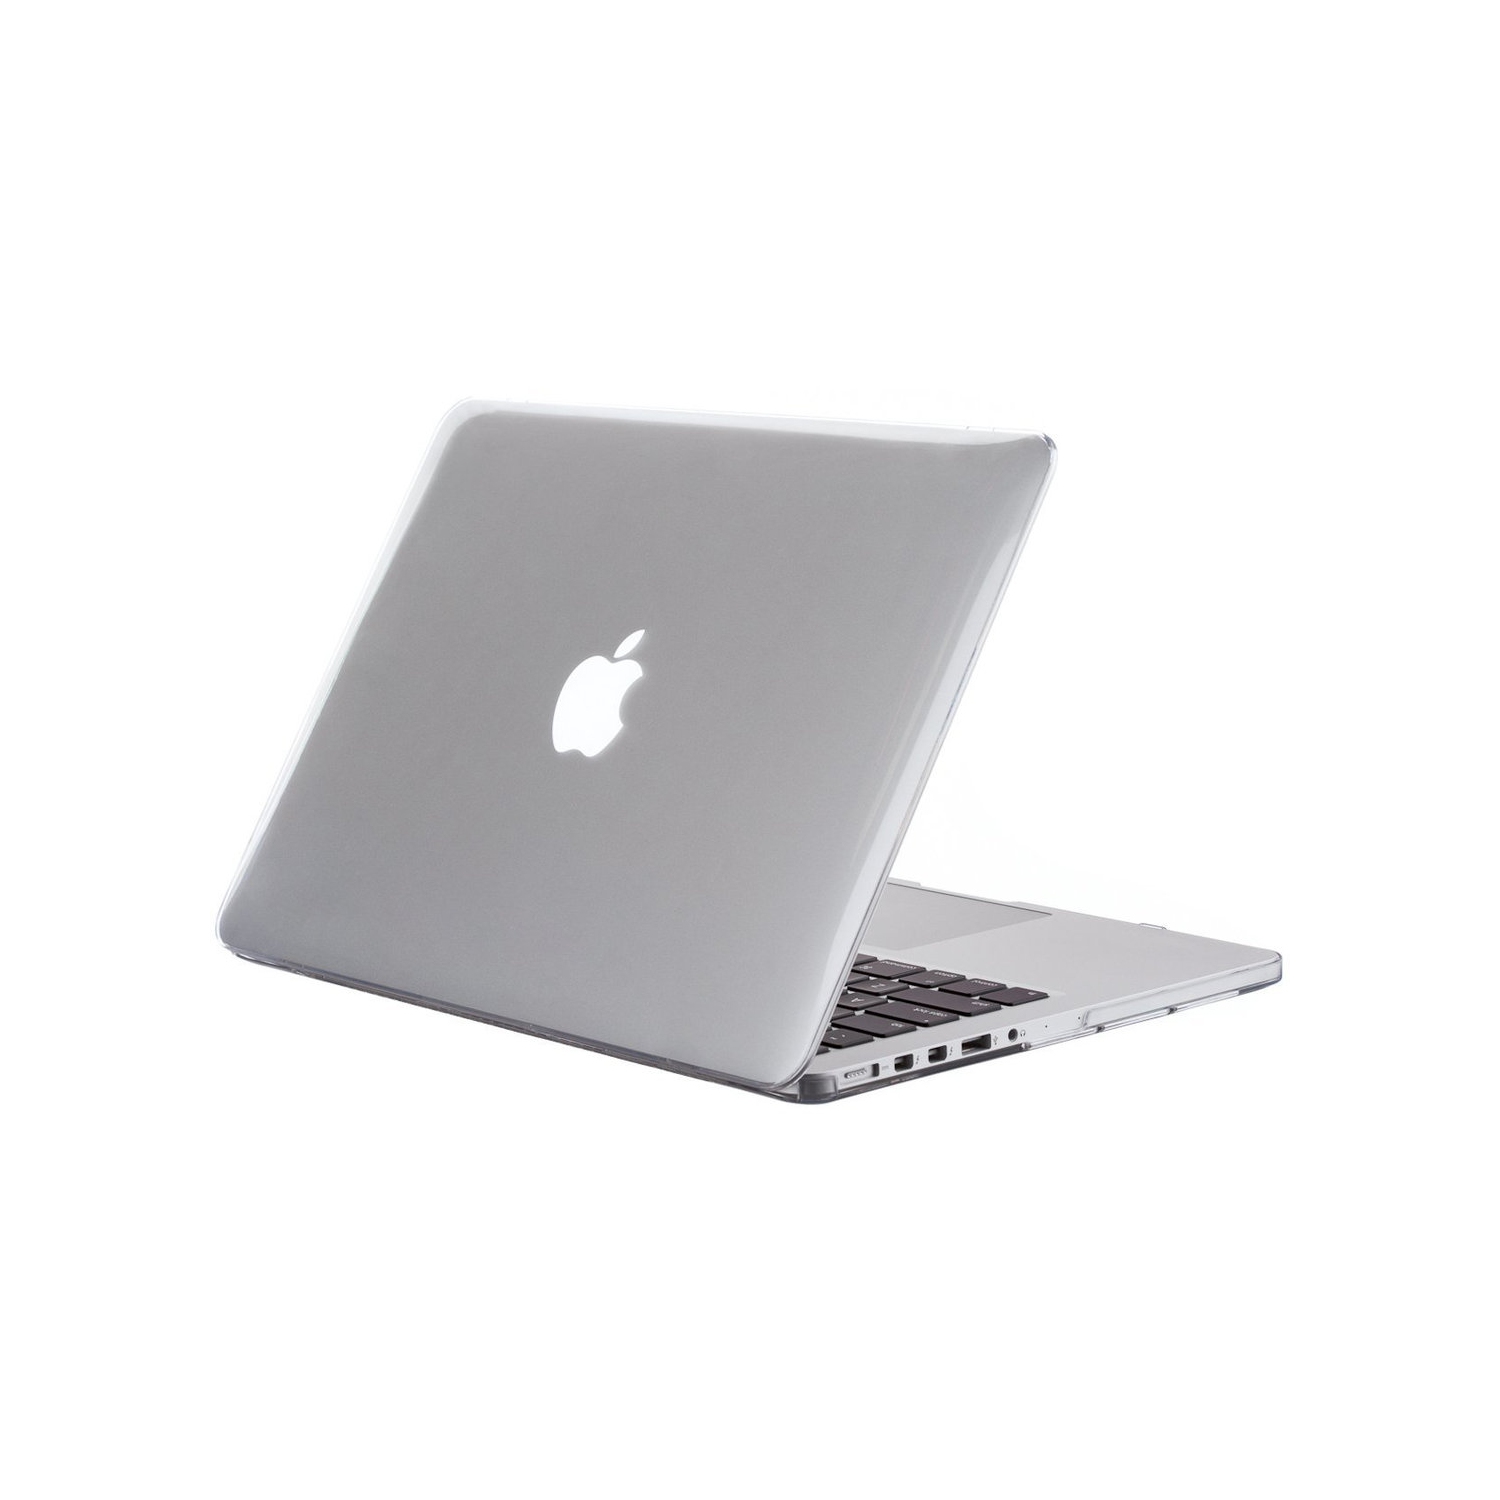 Refurbished (Good) - Apple MacBook Pro 15-Inch - Core i7 - 2.2GHZ - 16GB RAM - 256GB SSD - Retina Mid-2014 - MGXA2LL/A